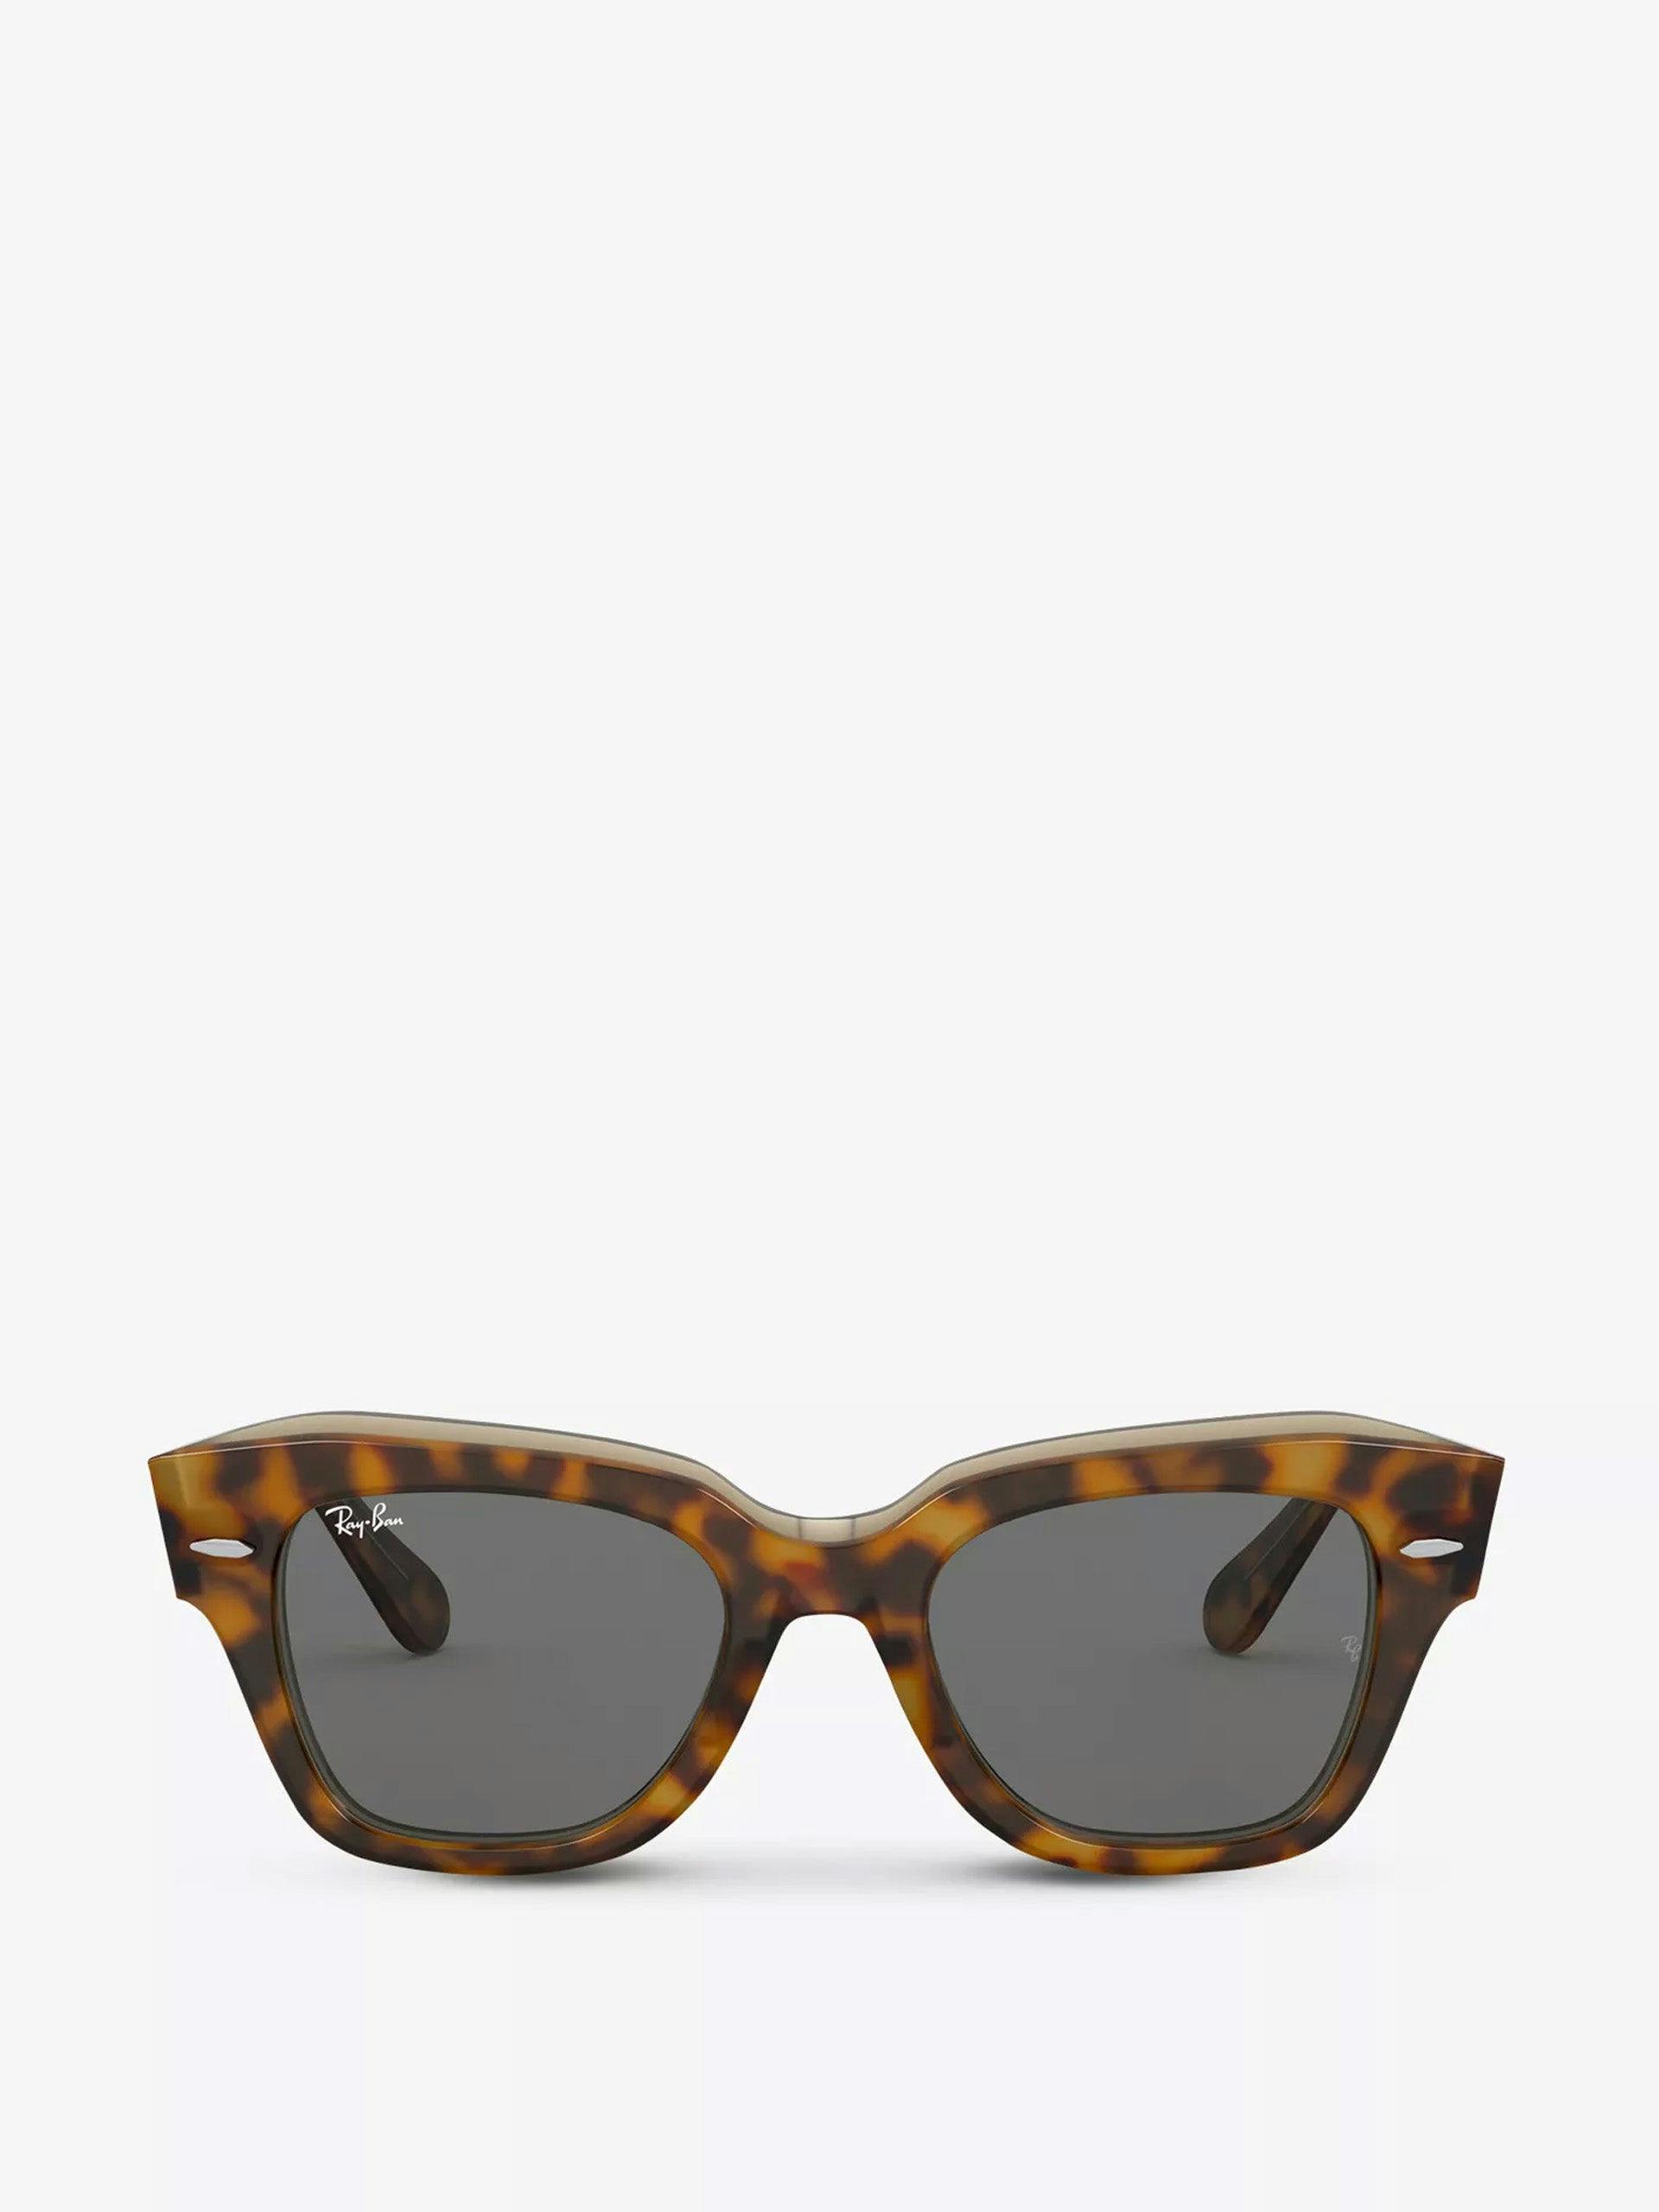 RB2186 rectangular-frame sunglasses